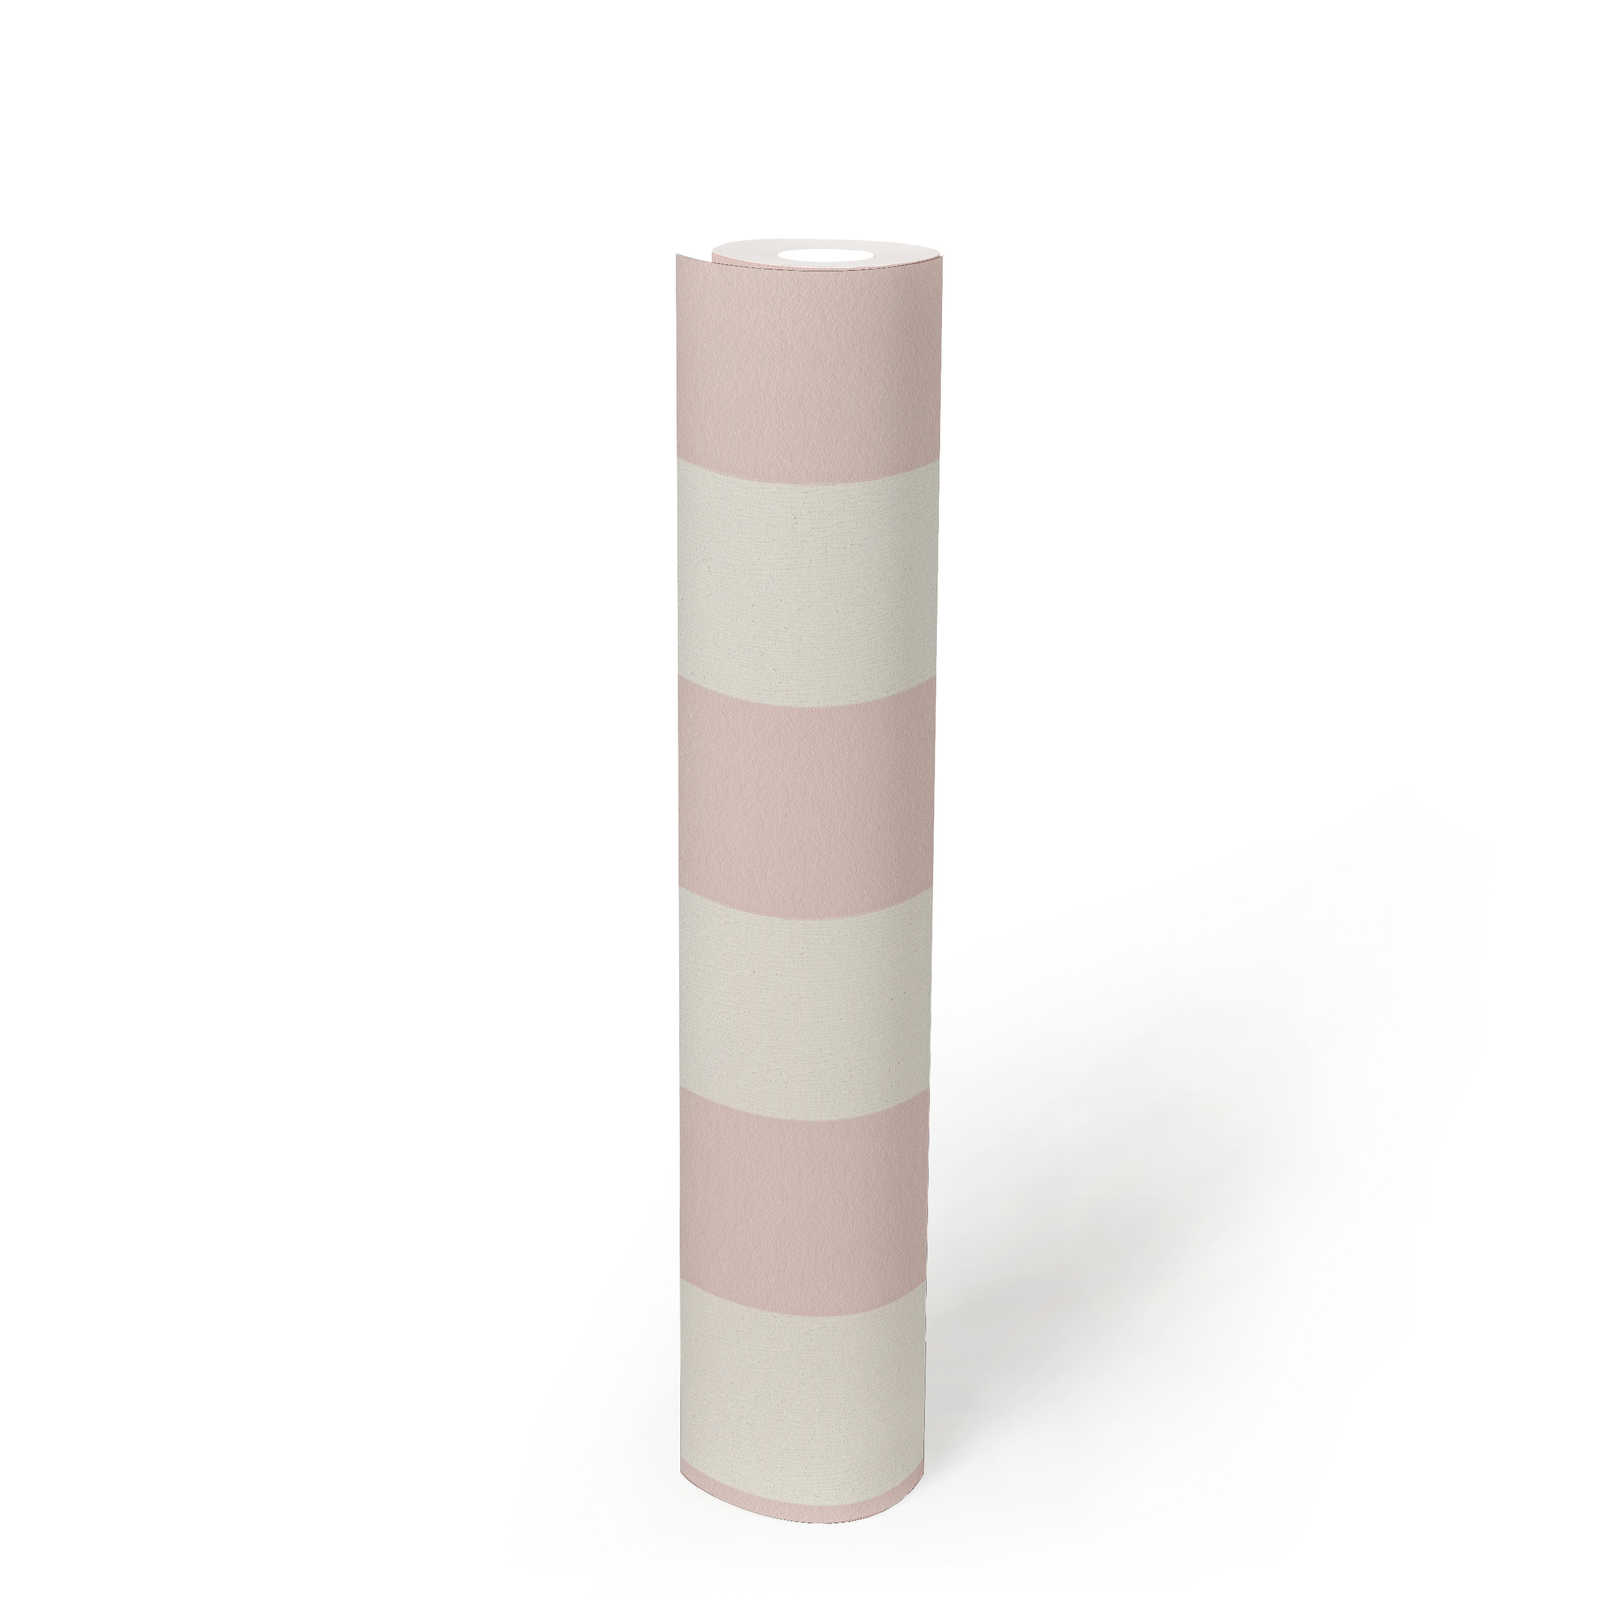             Papel pintado de rayas con textura, rayas en bloque rosa y blanco
        